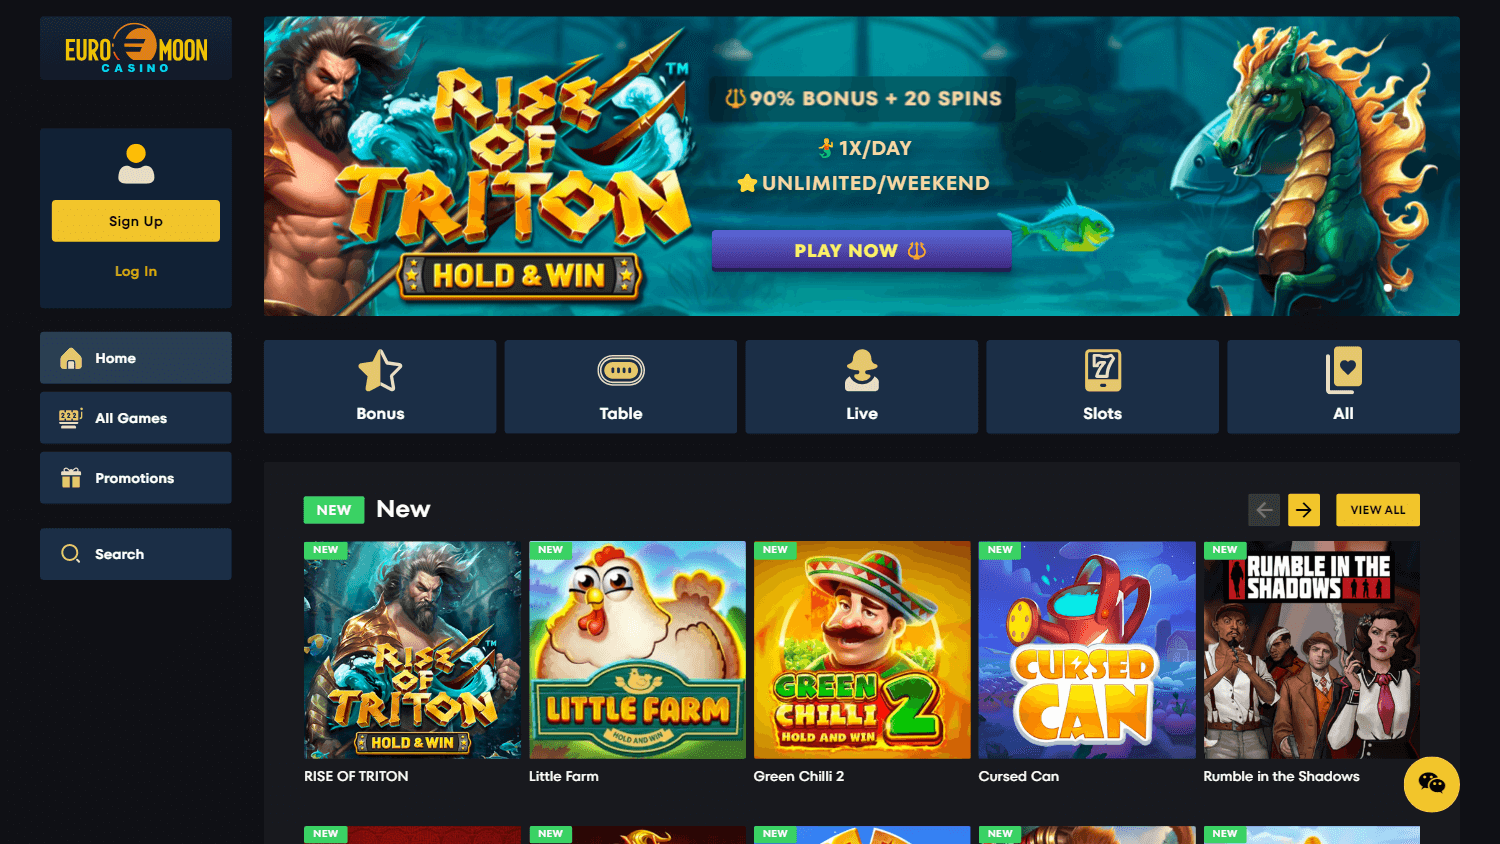 euromoon_casino_homepage_desktop